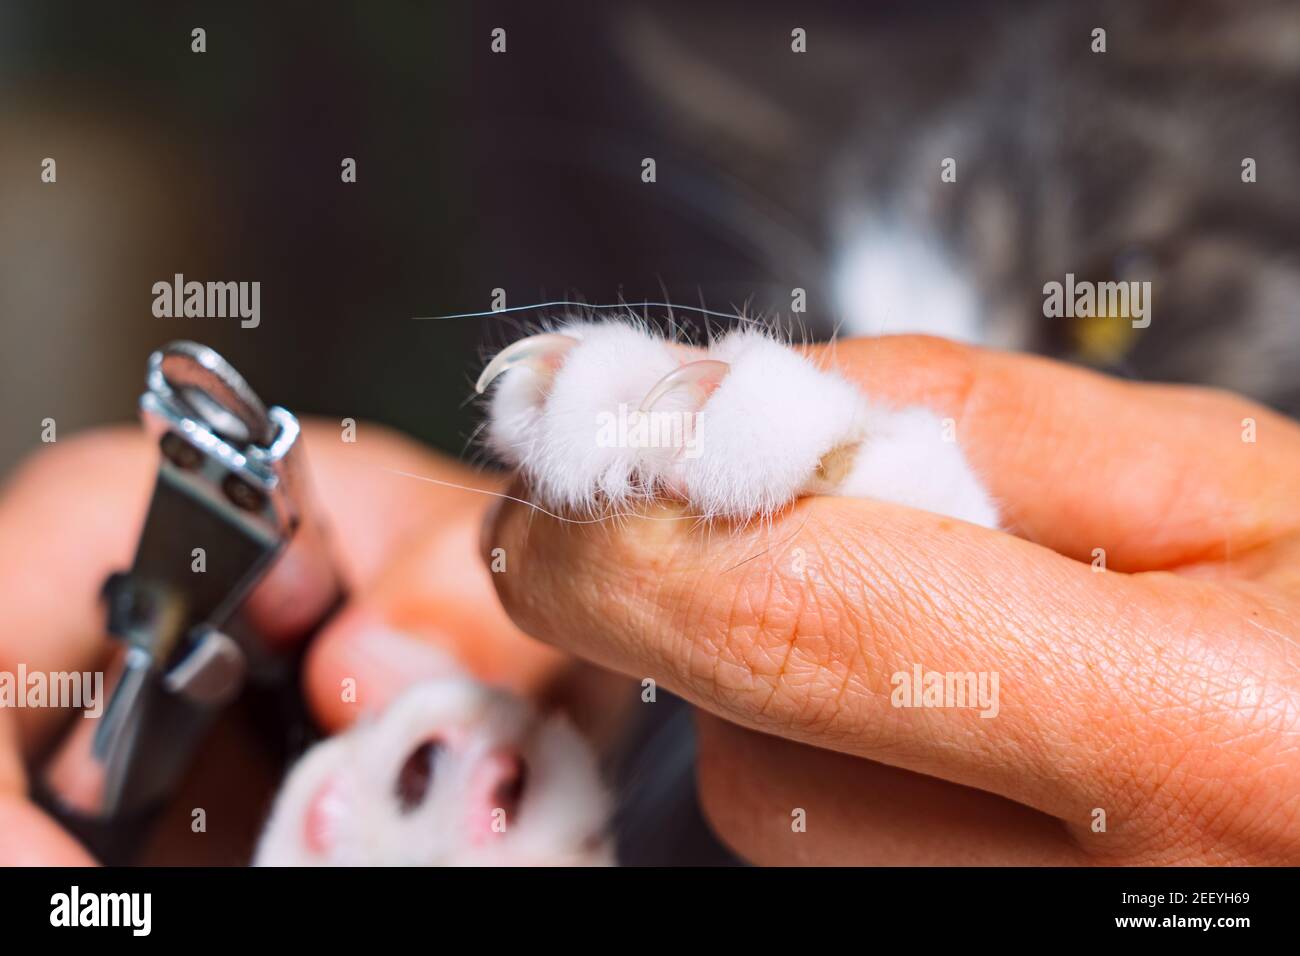 Можно стричь ногти кошкам. Стрижка когтей у кошек. Подстрижка когтей коту. Стричь ногти коту. Ножницы для обрезания когтей у кошек.